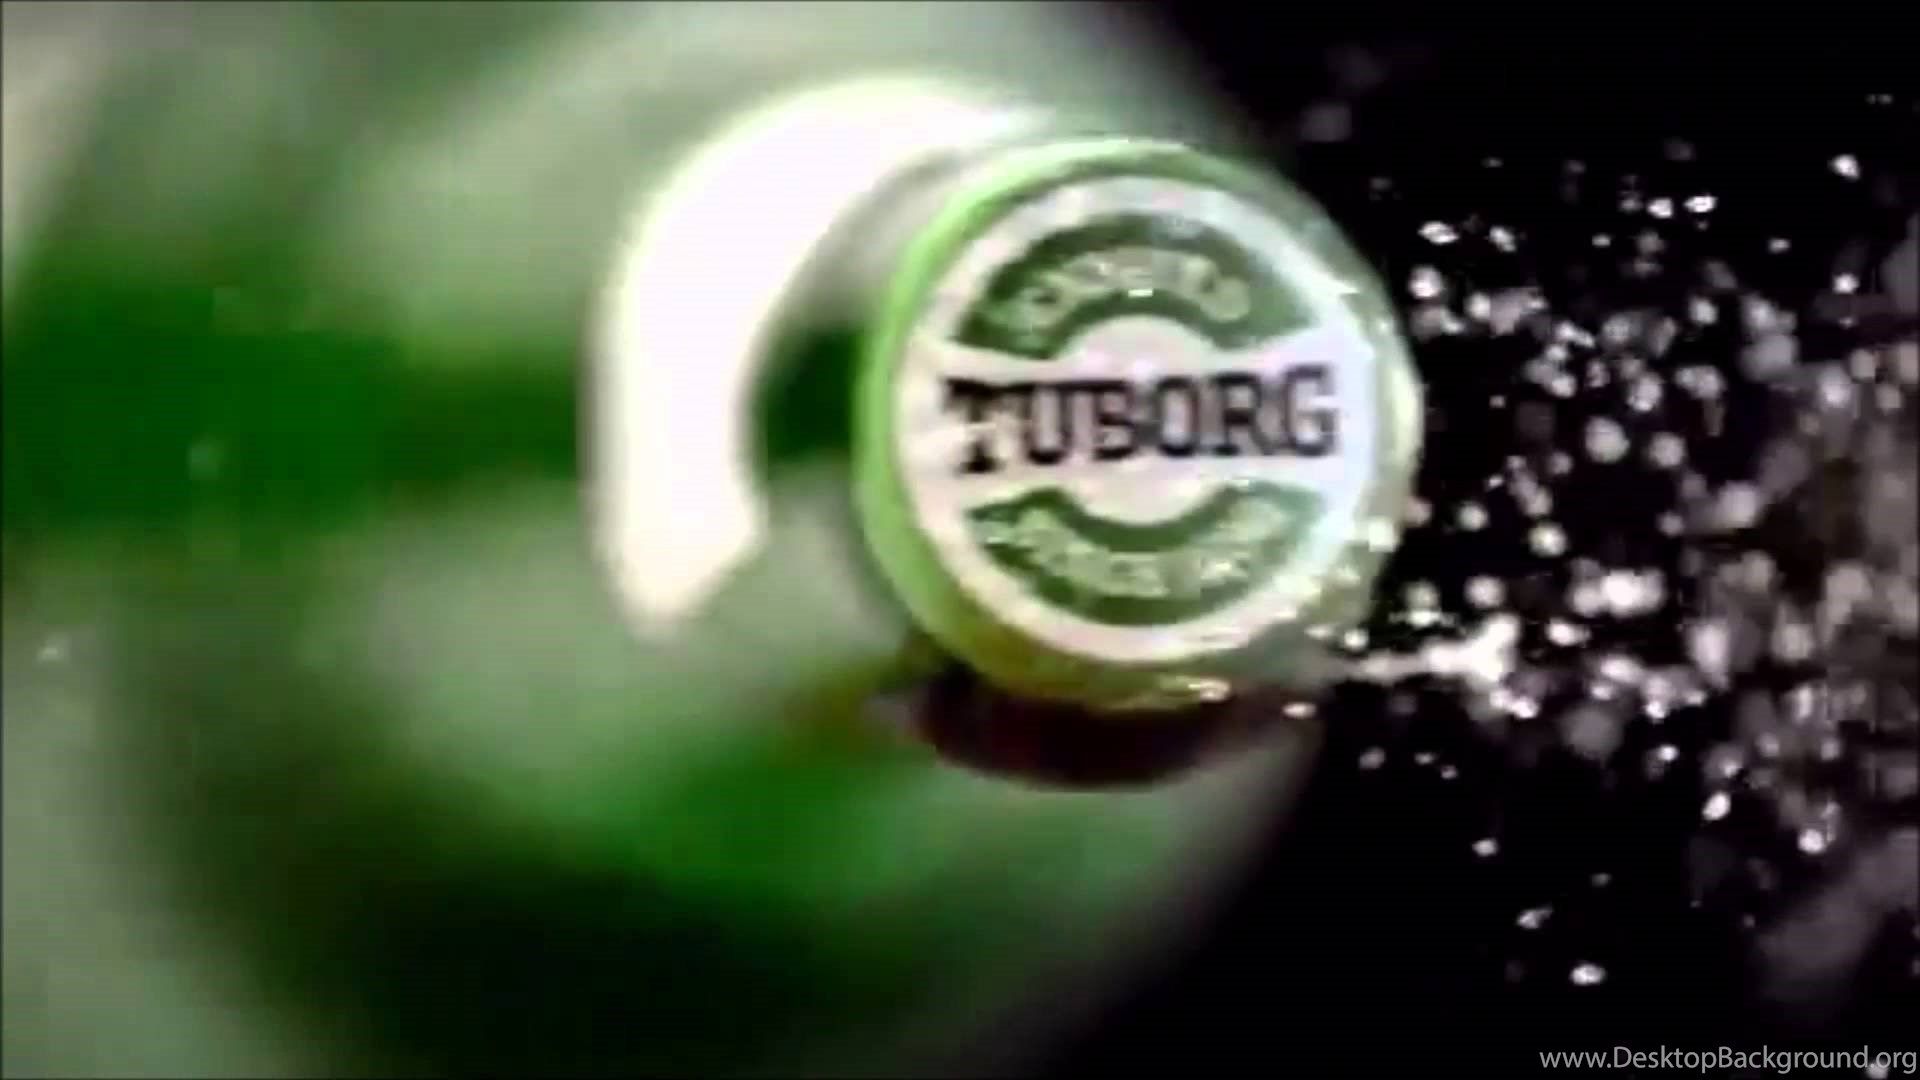 Tuborg Beer Ringtone Image Desktop Background